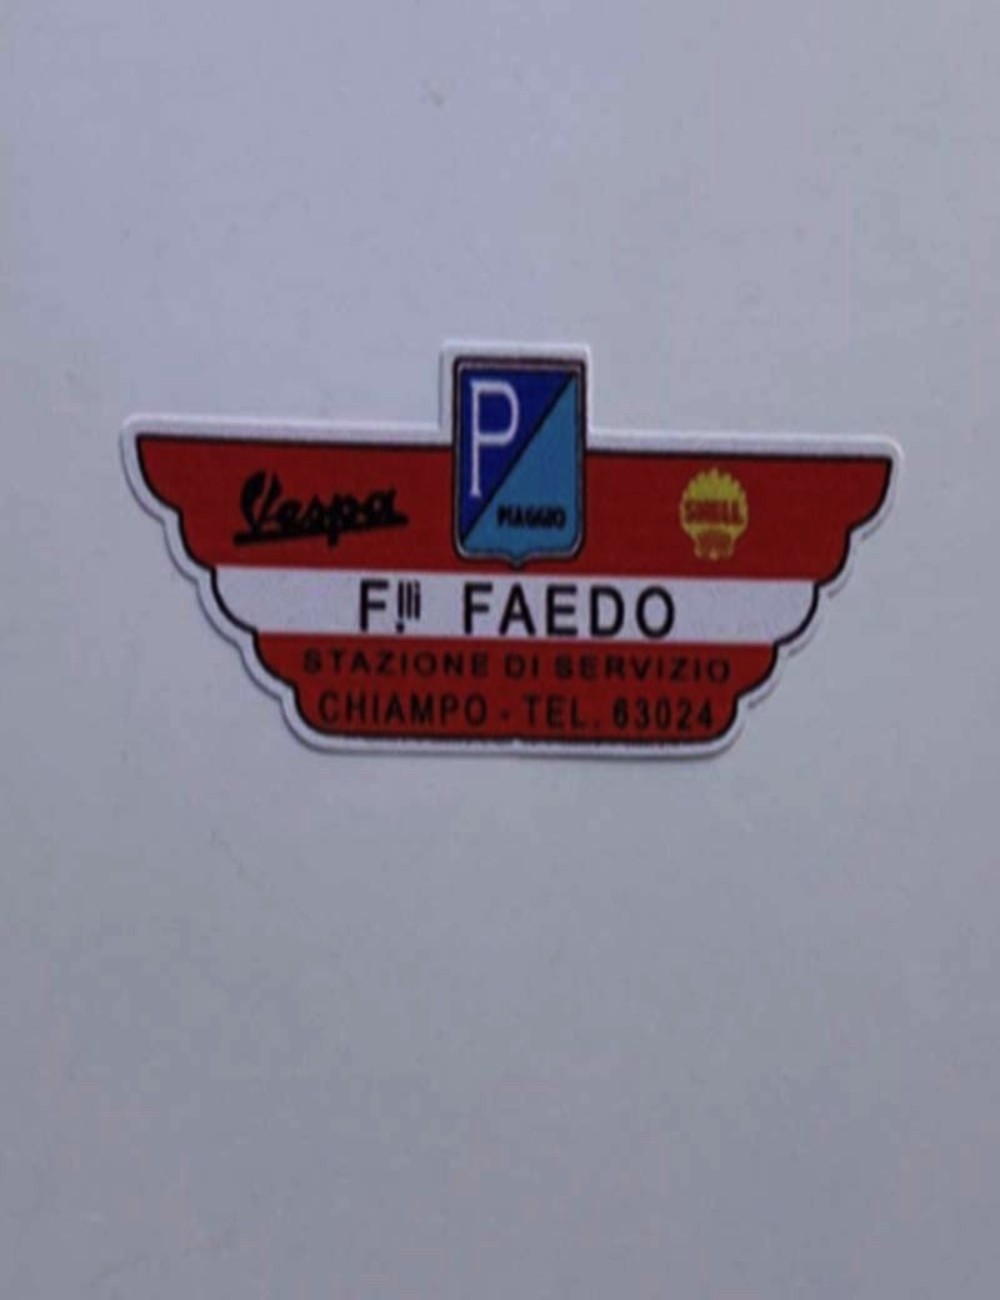 Adesivo concessionario F.lli Faedo. Dimensioni : 5,5 cm x  2,3 cm